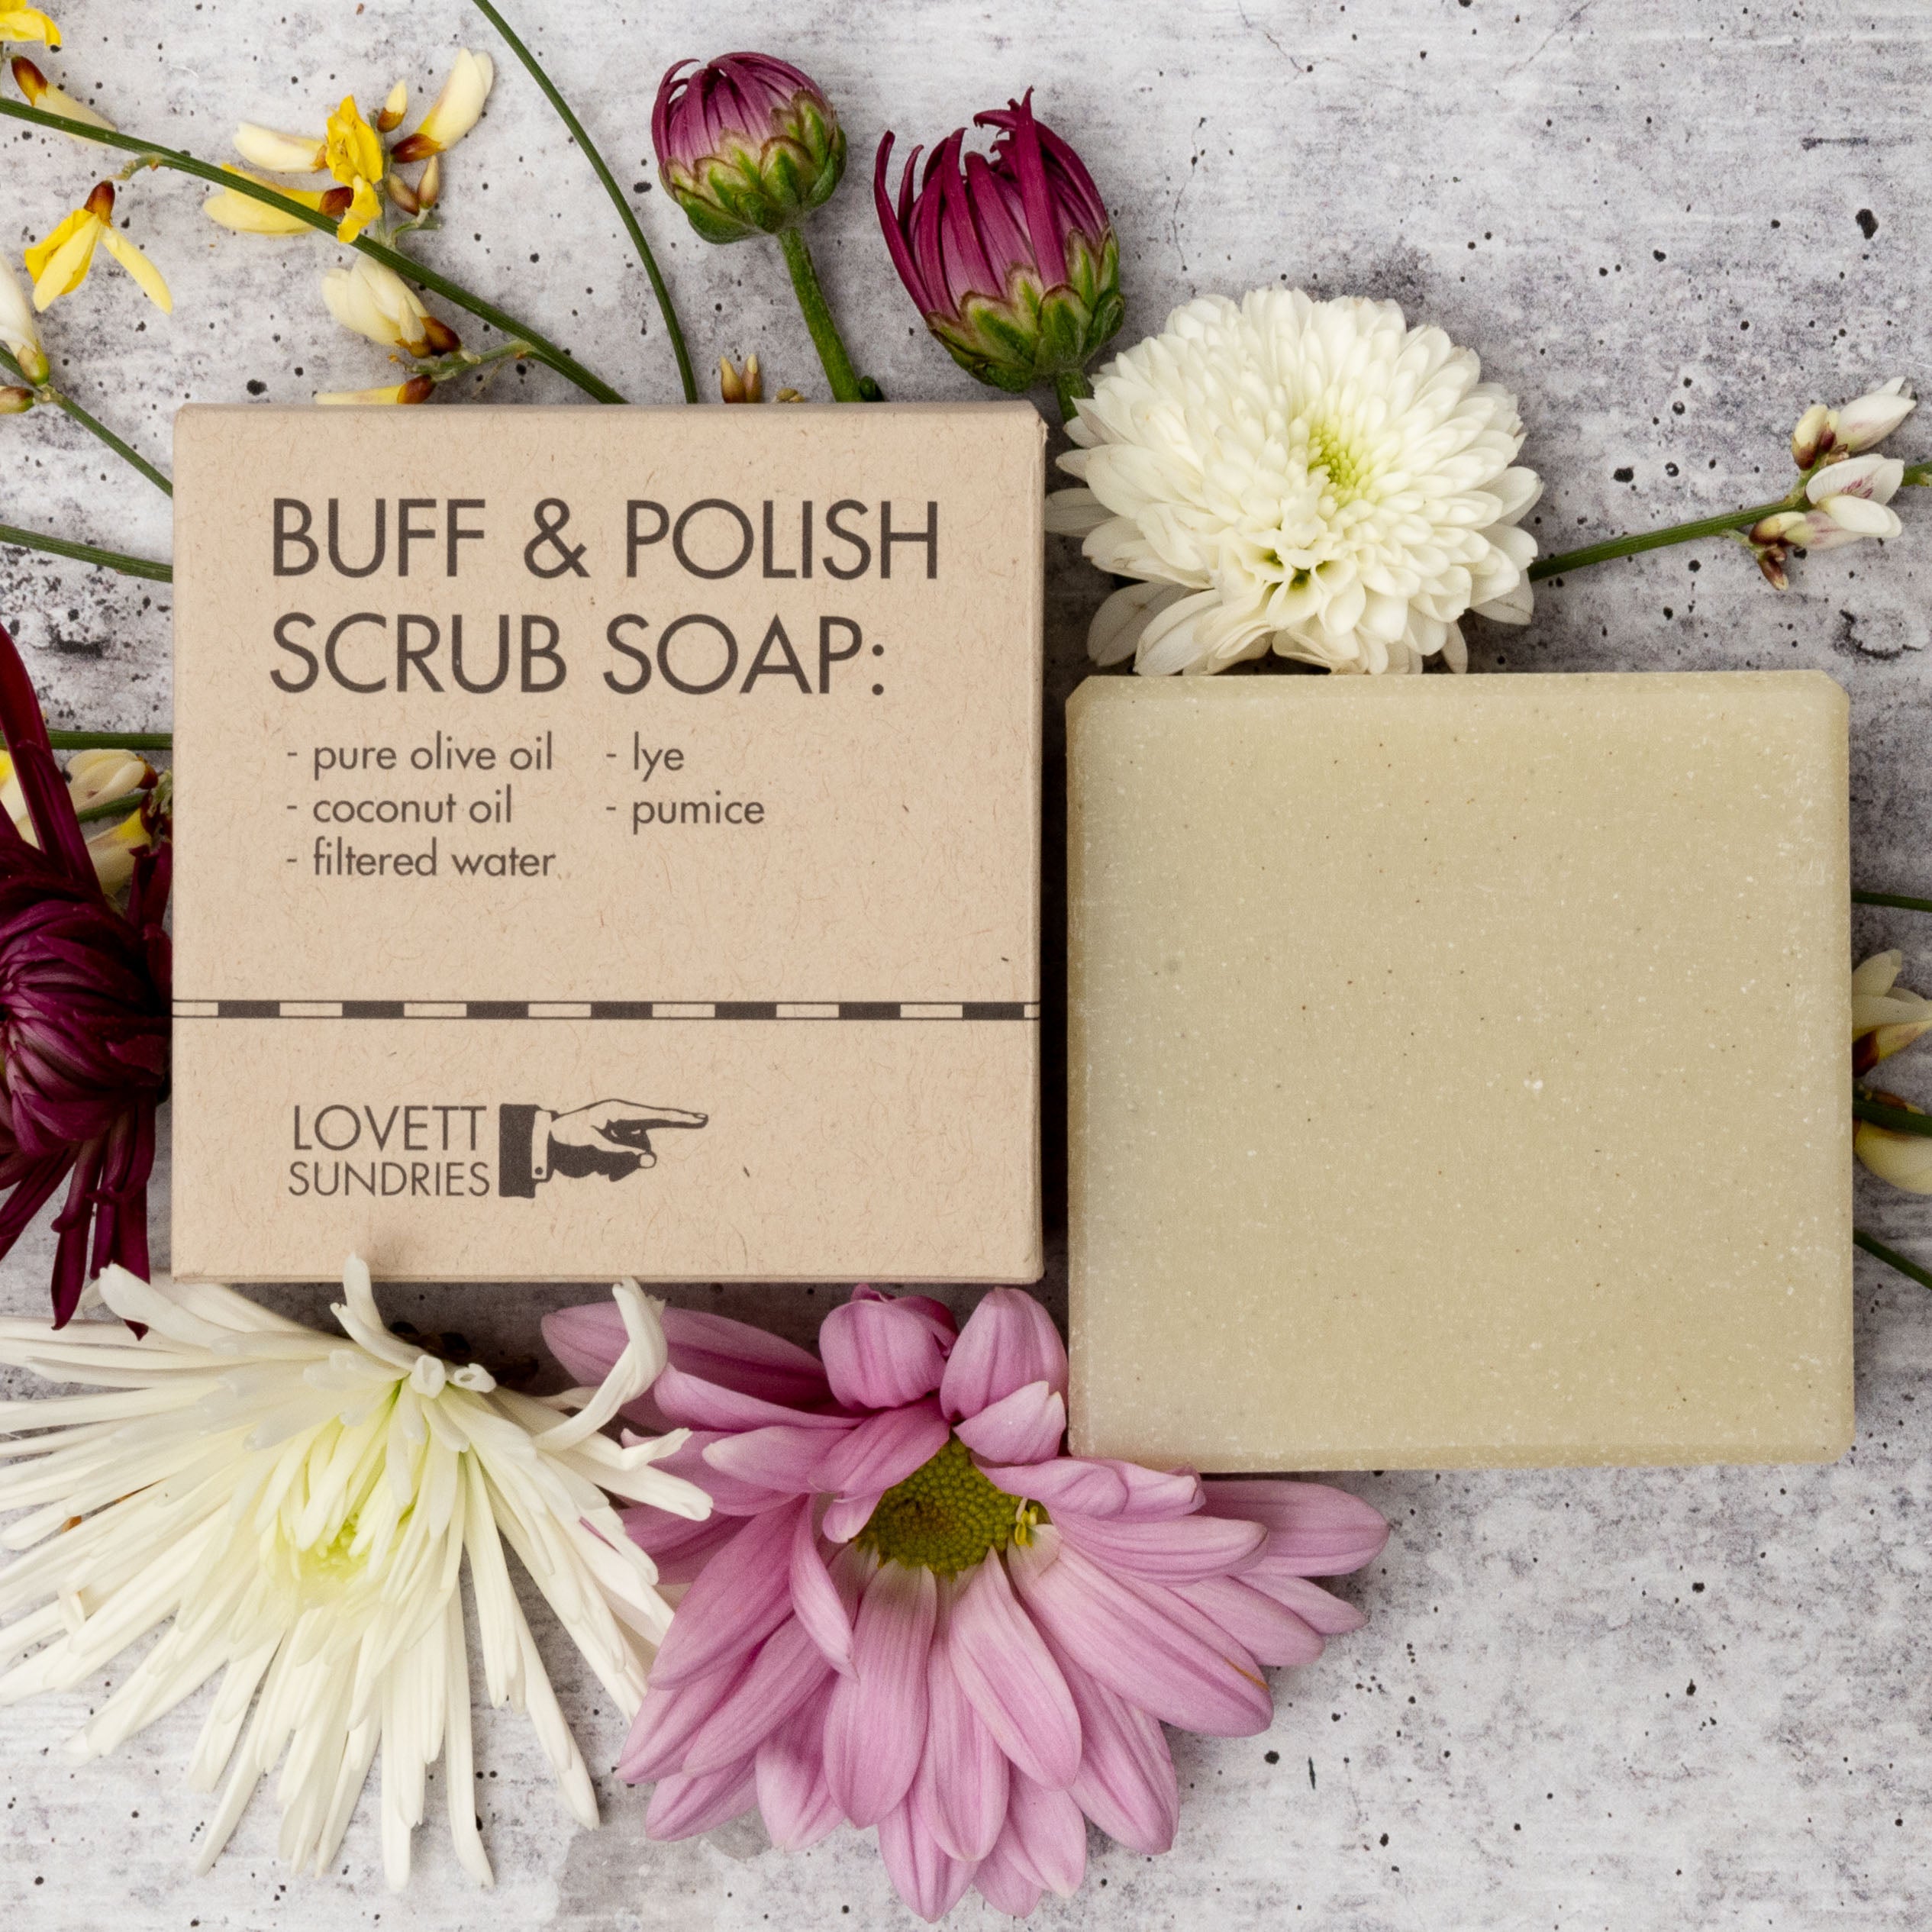 Buff & Polish Scrub Soap